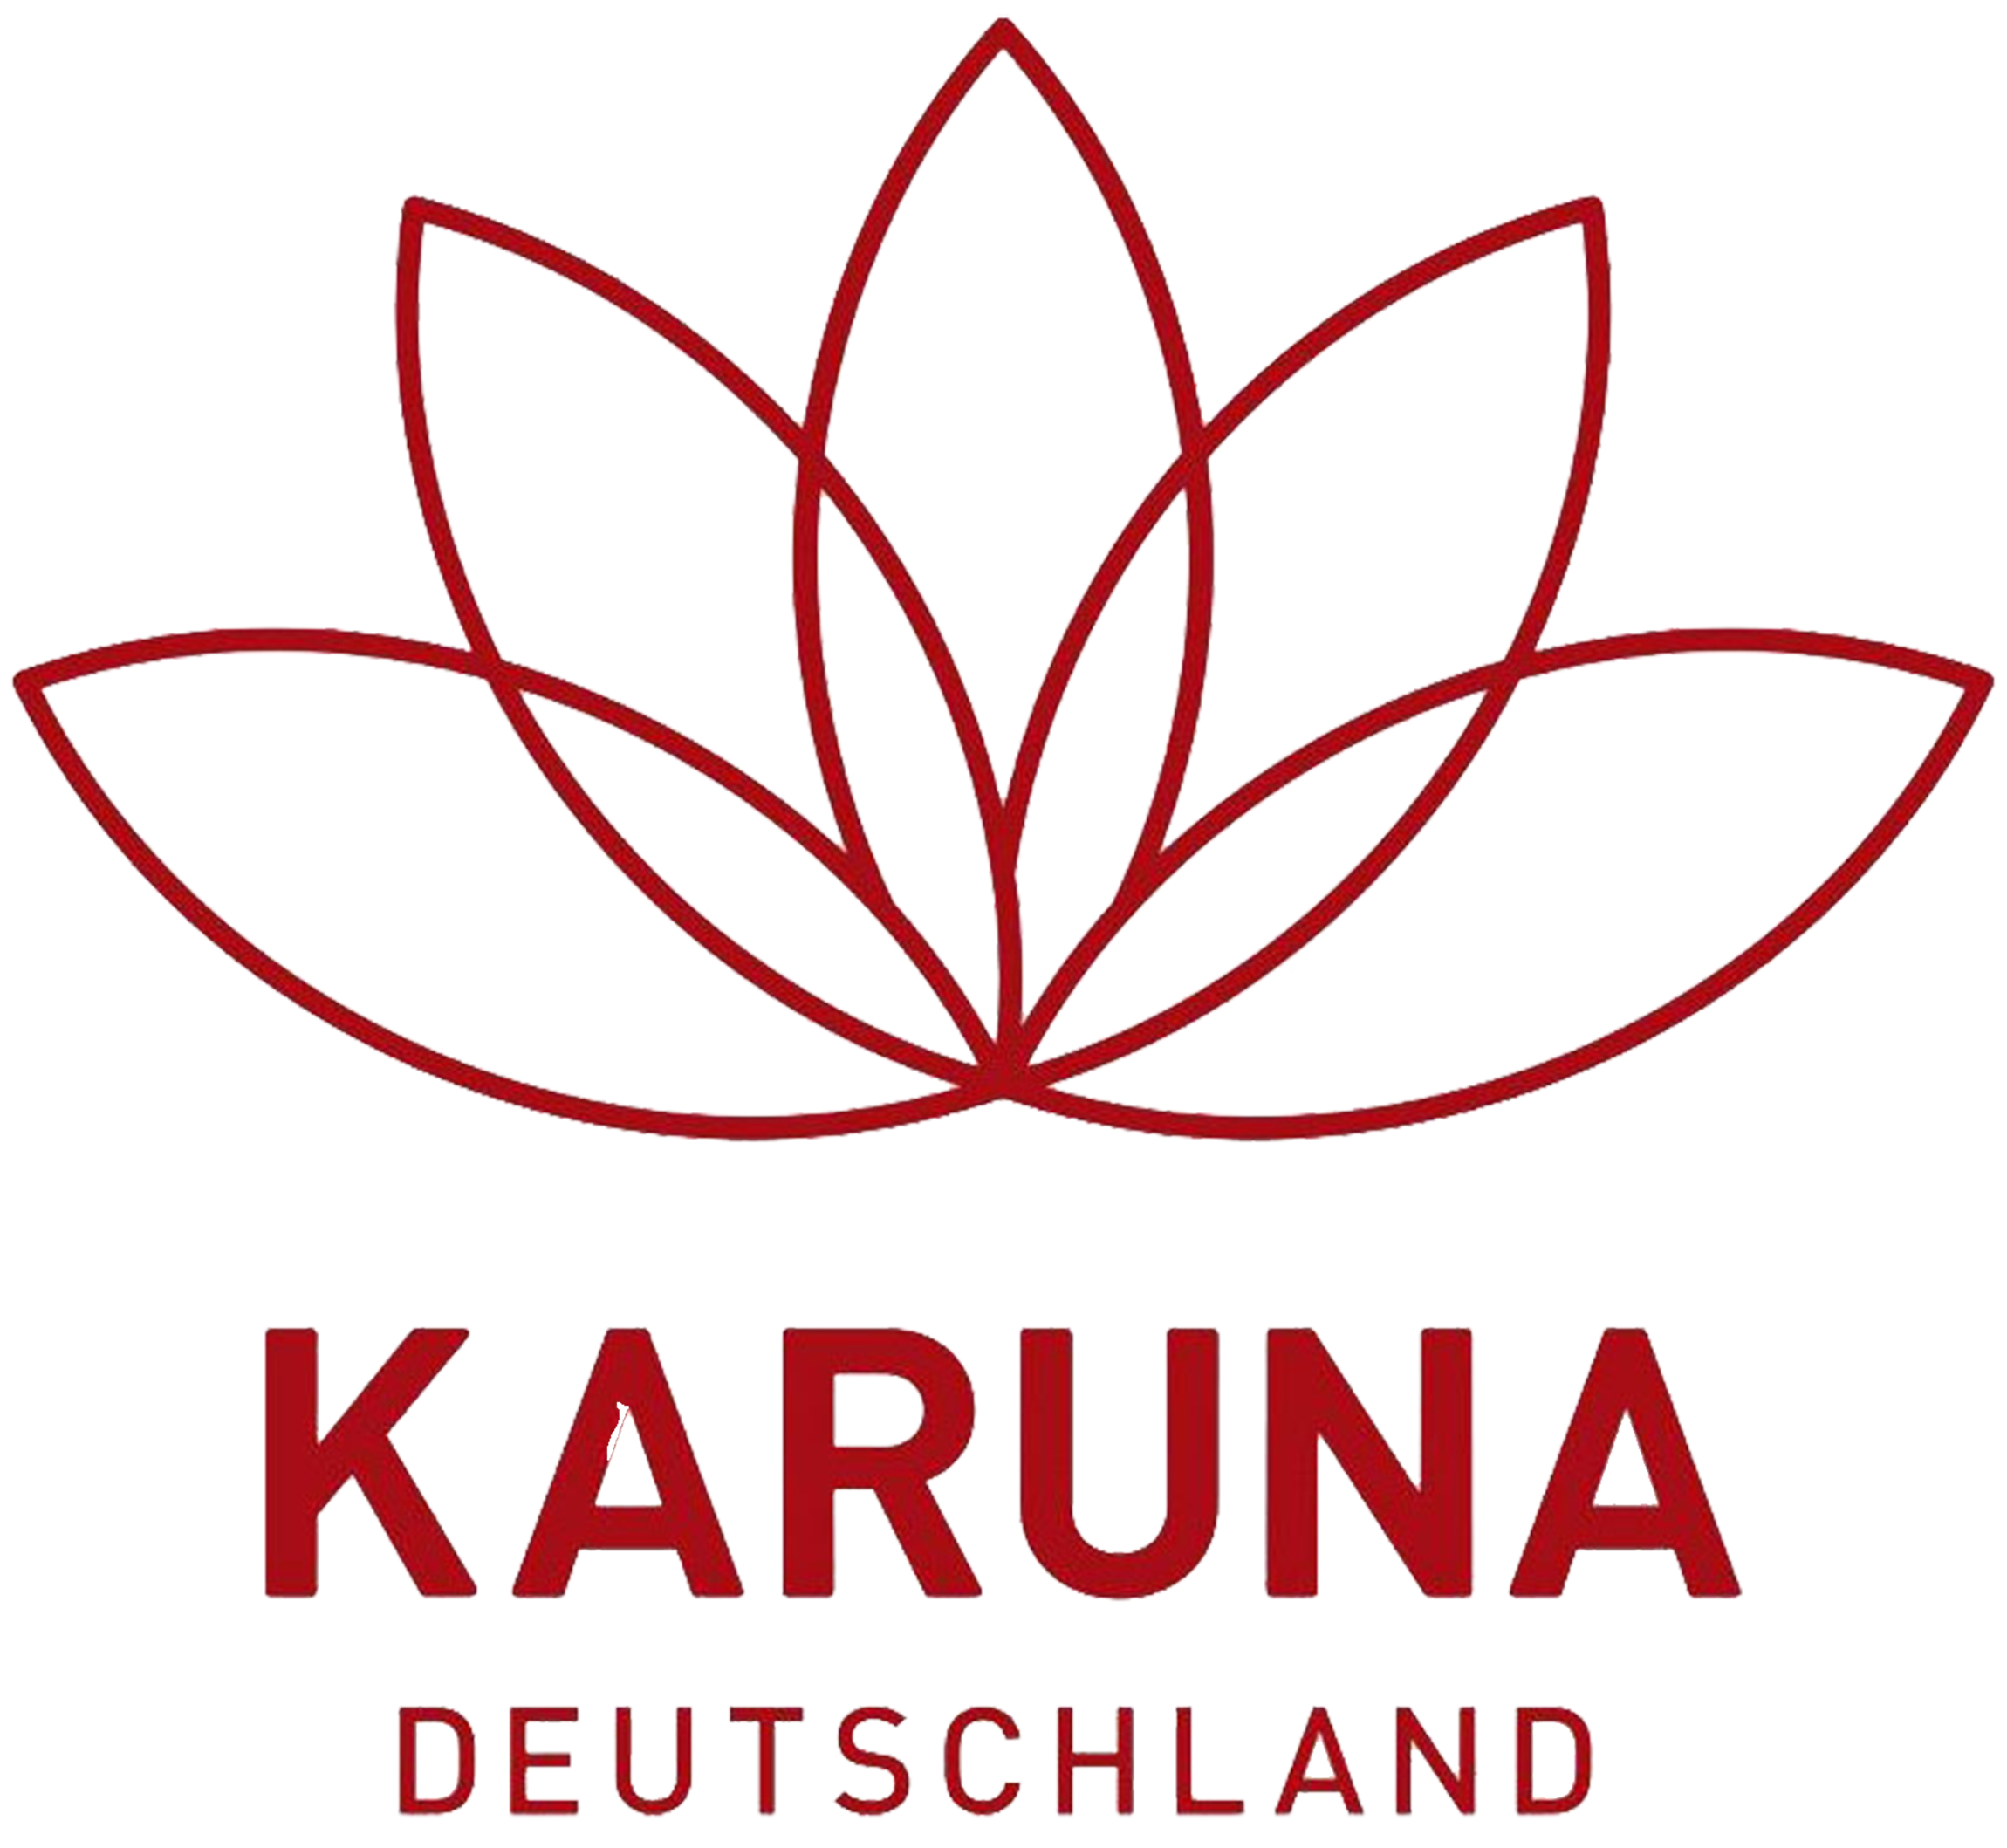 Karuna Deutschland